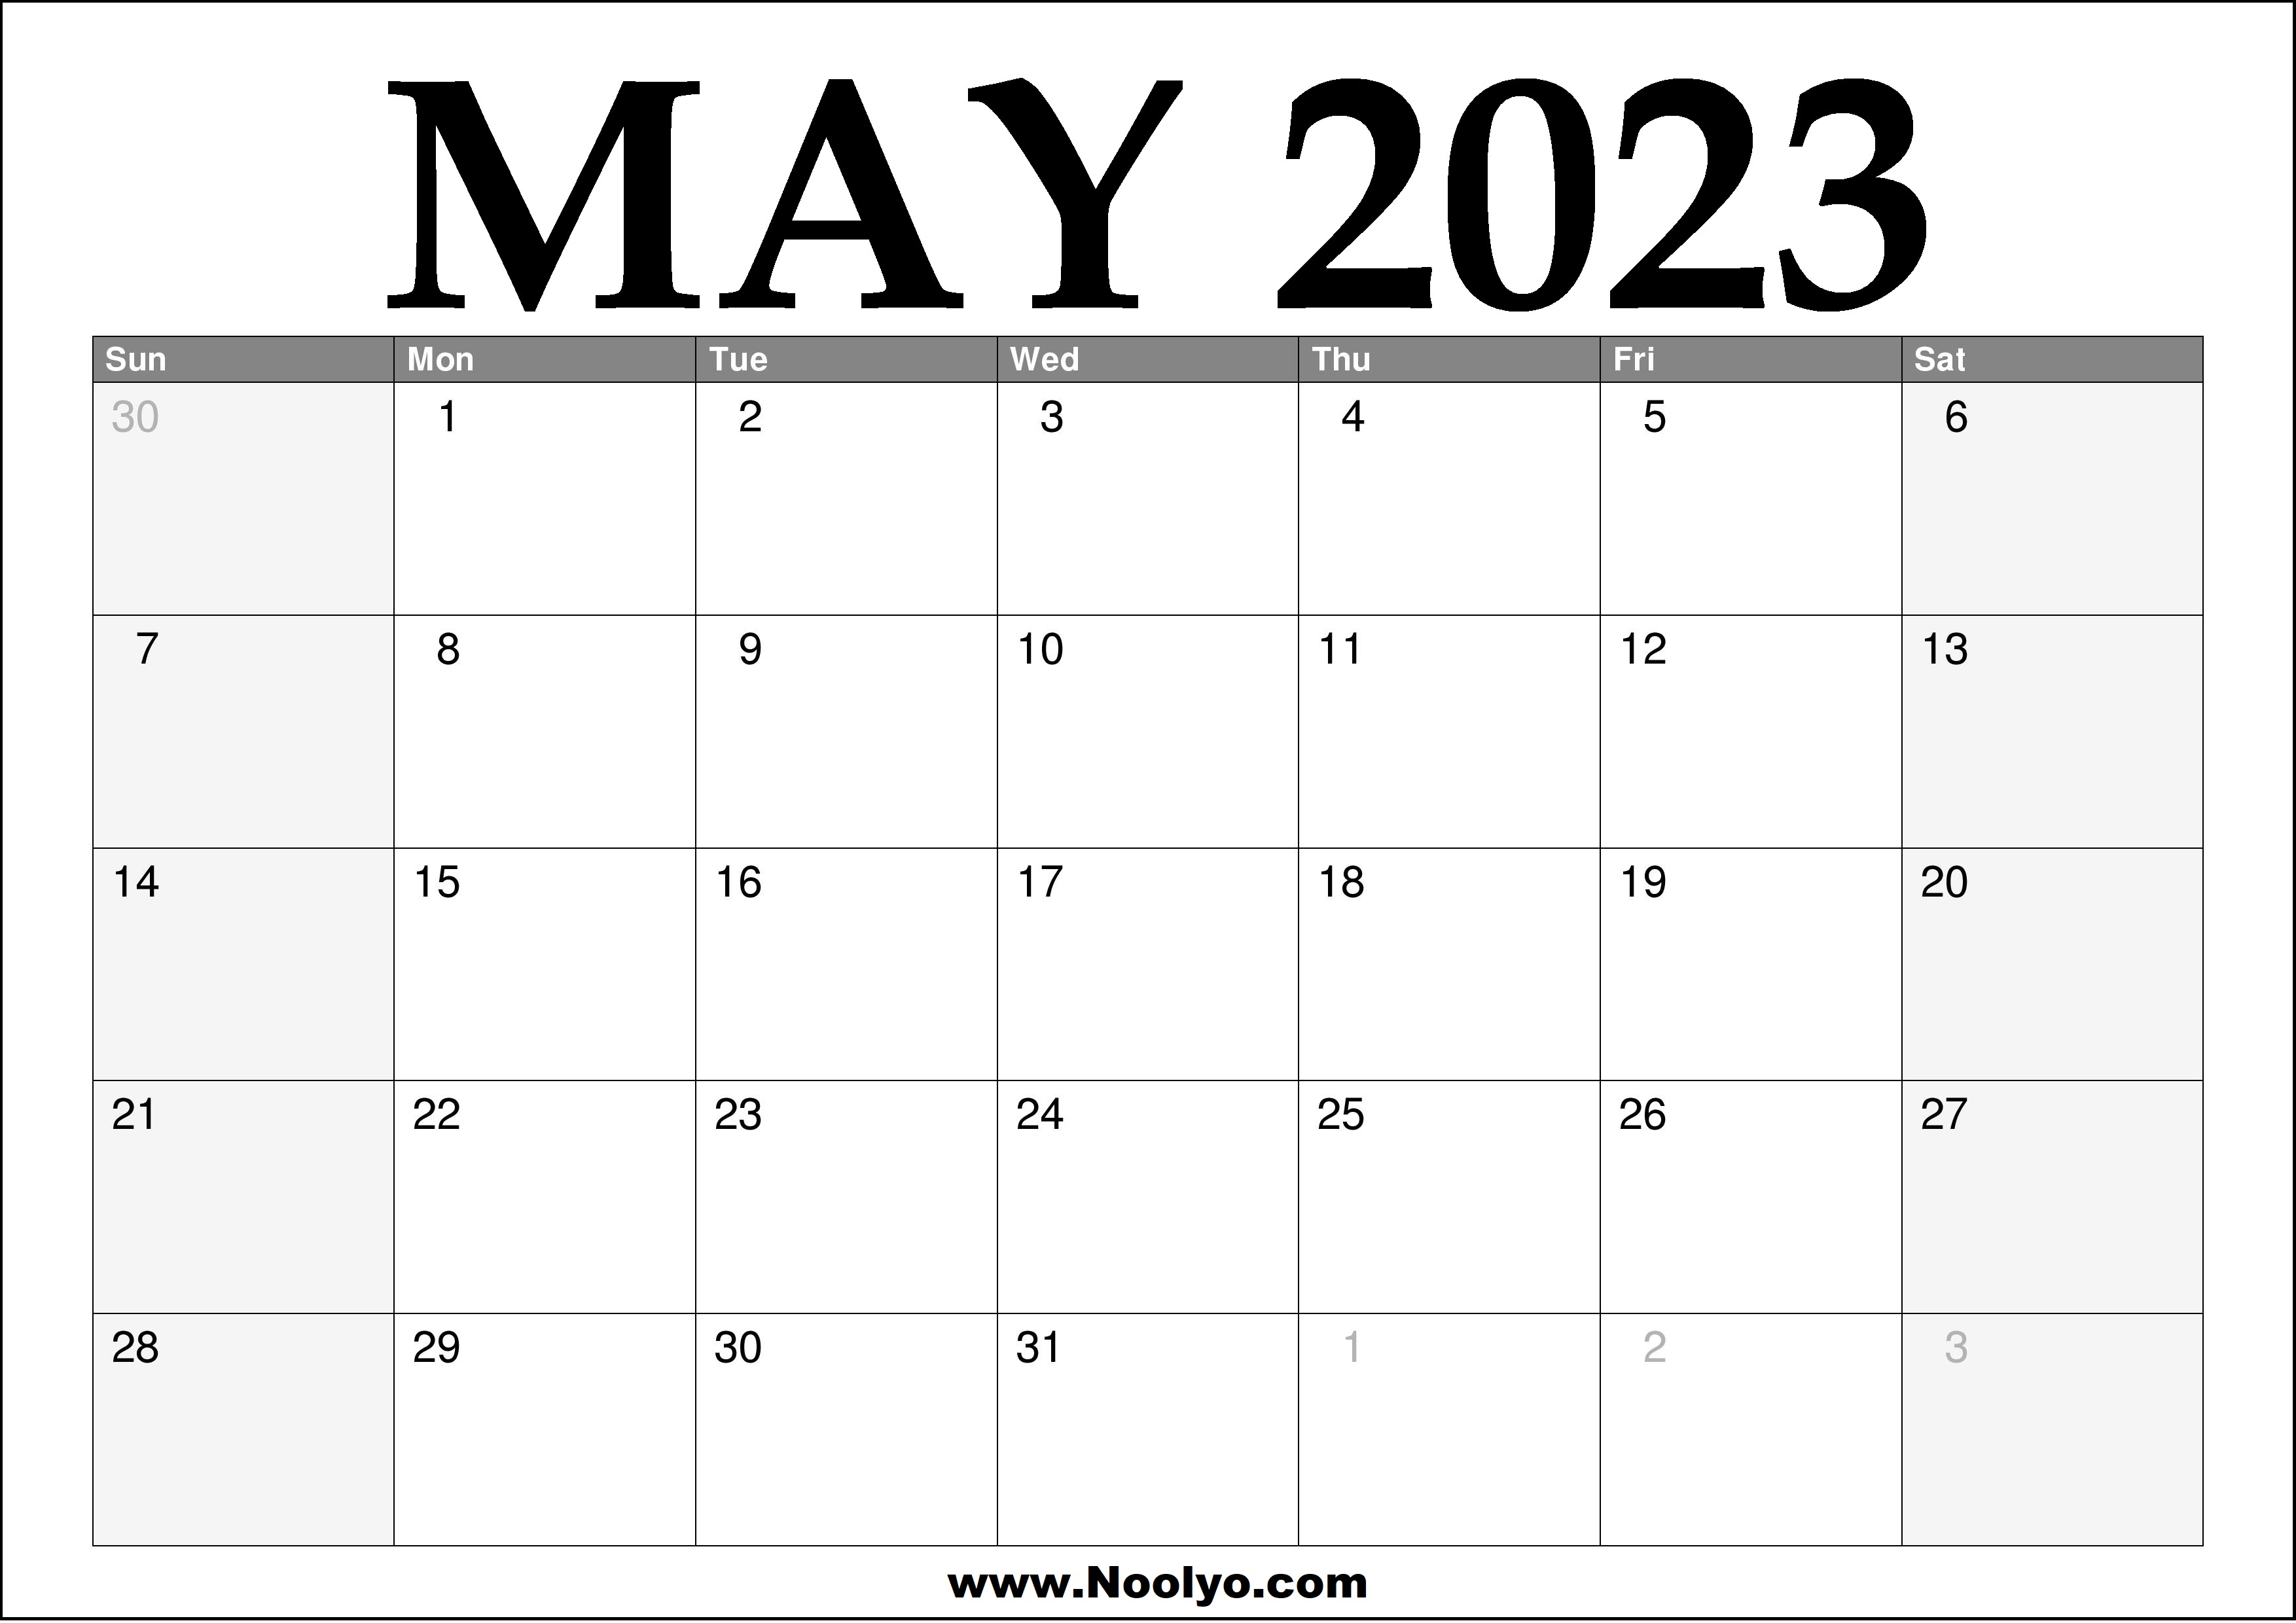 2023-may-calendar-printable-noolyo